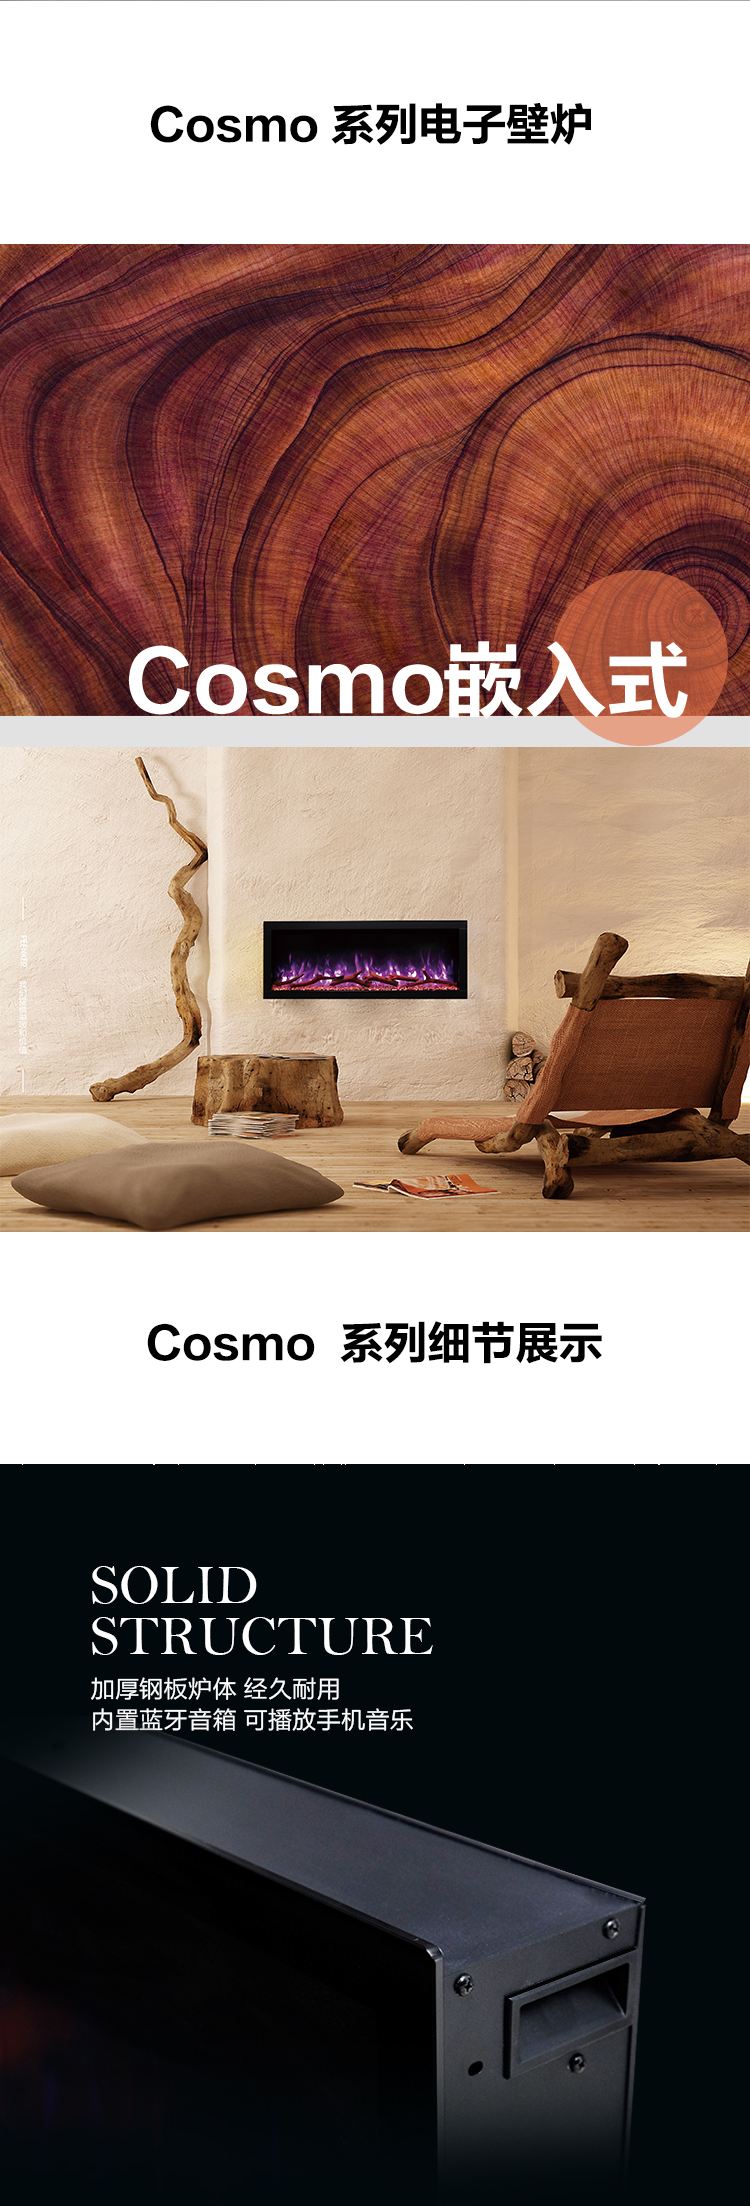 平客壁炉仿真火焰电子假火装饰壁炉-Cosmo系列.jpg